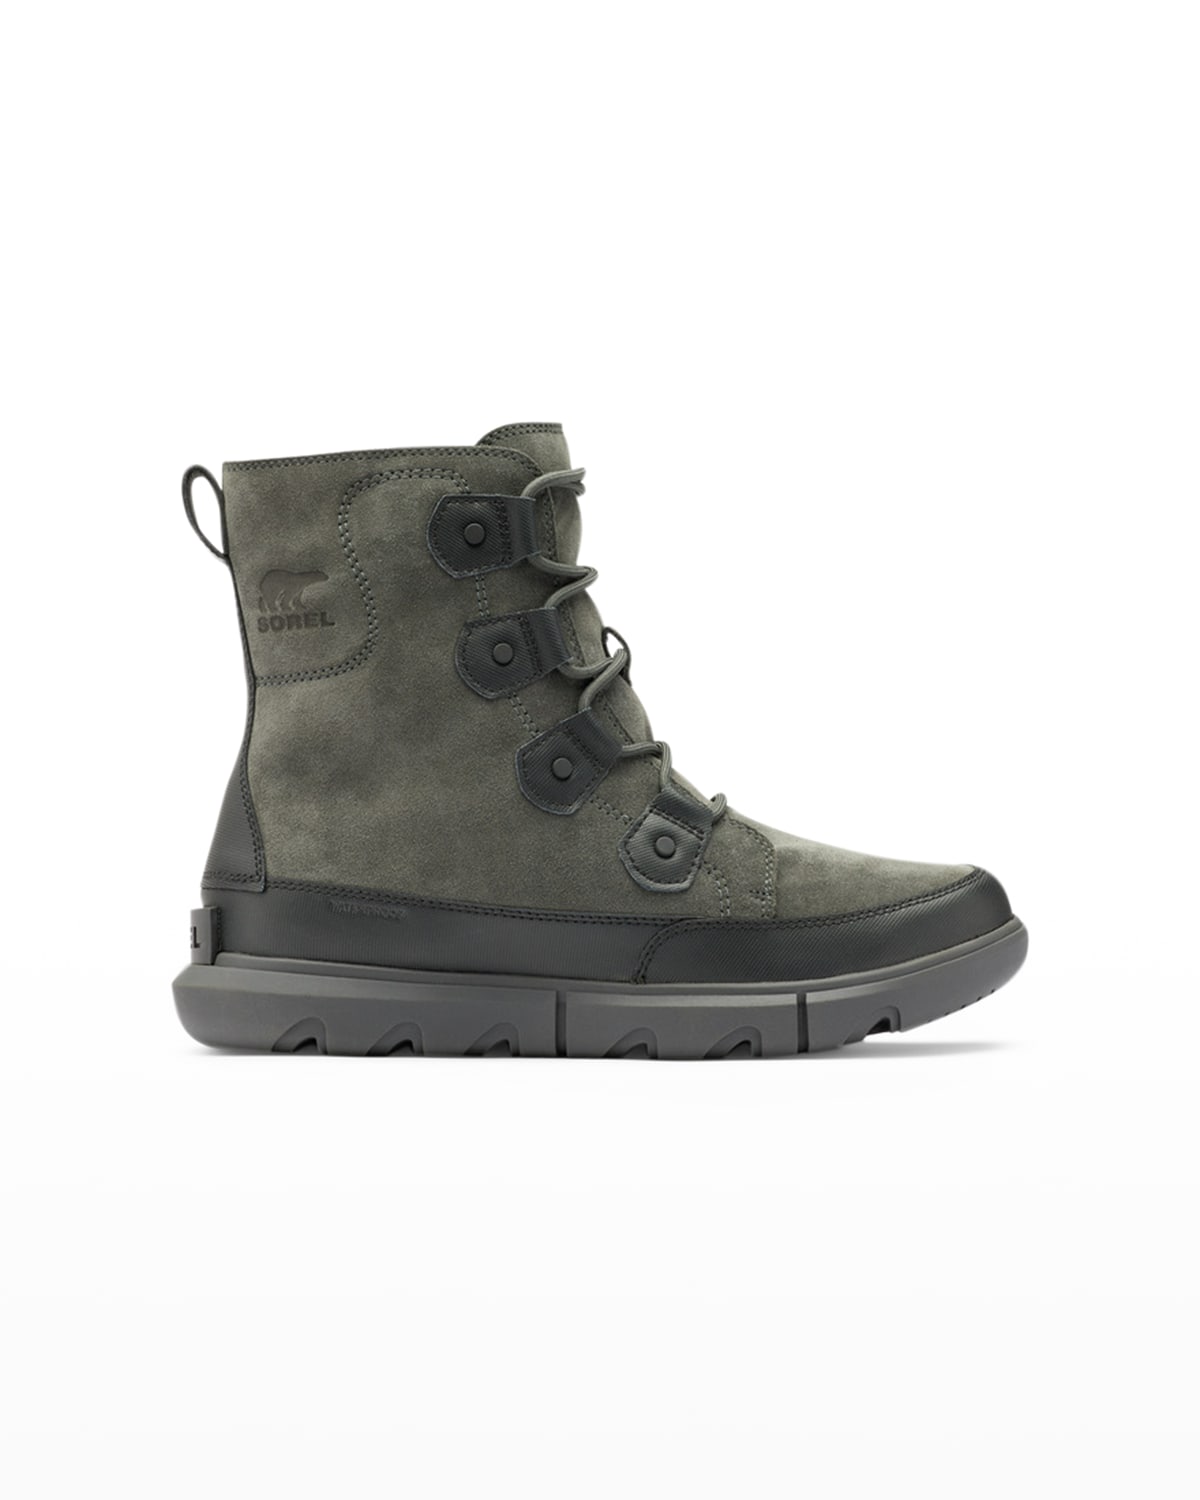 Sorel Men's Madson Waterproof Suede Hiker Boots | Neiman Marcus